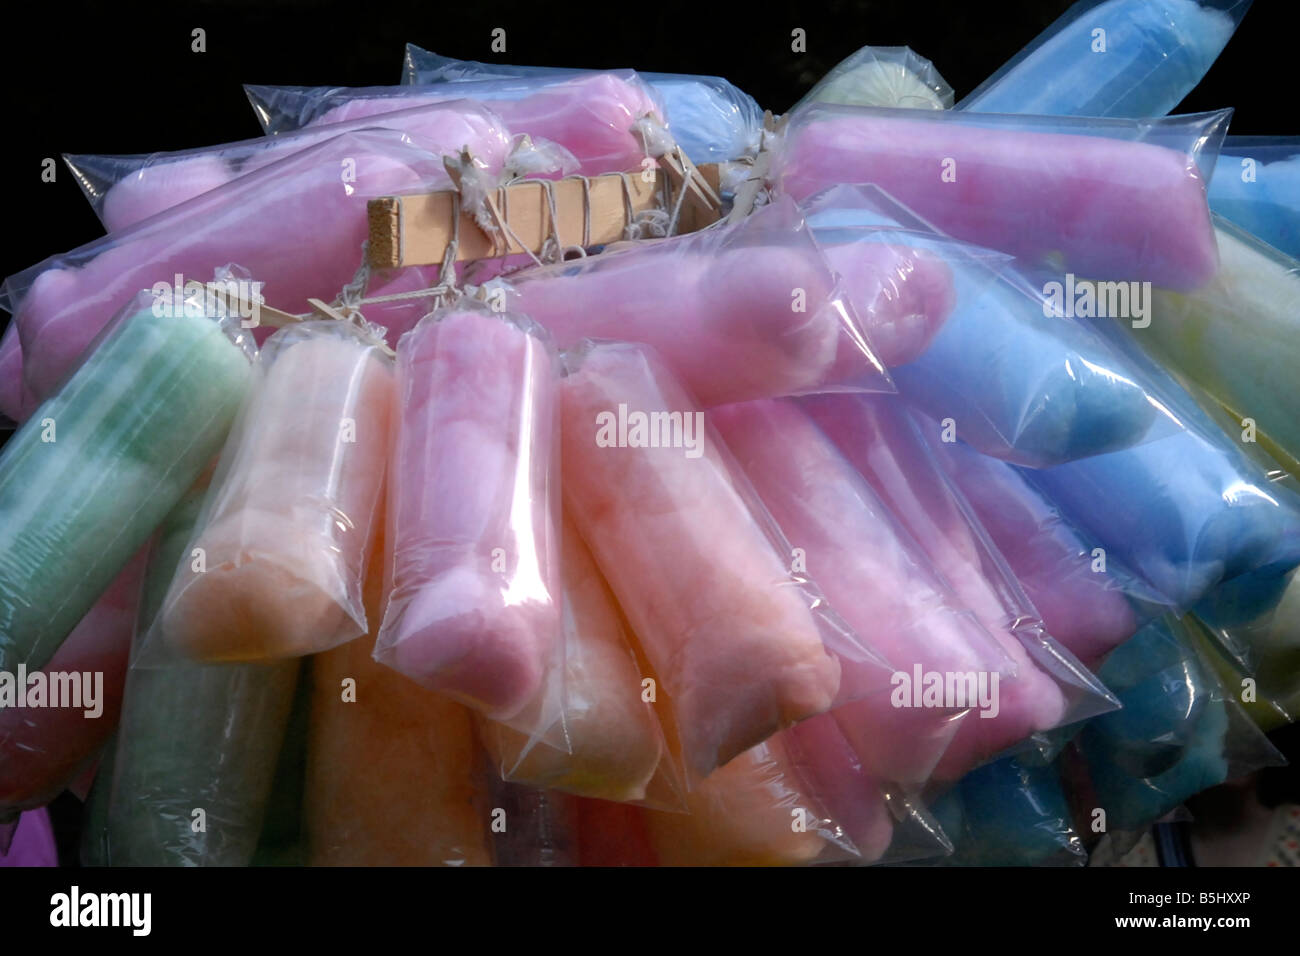 Immagini Stock - Zucchero Filato Colorato. Cibo Dolce Per Feste